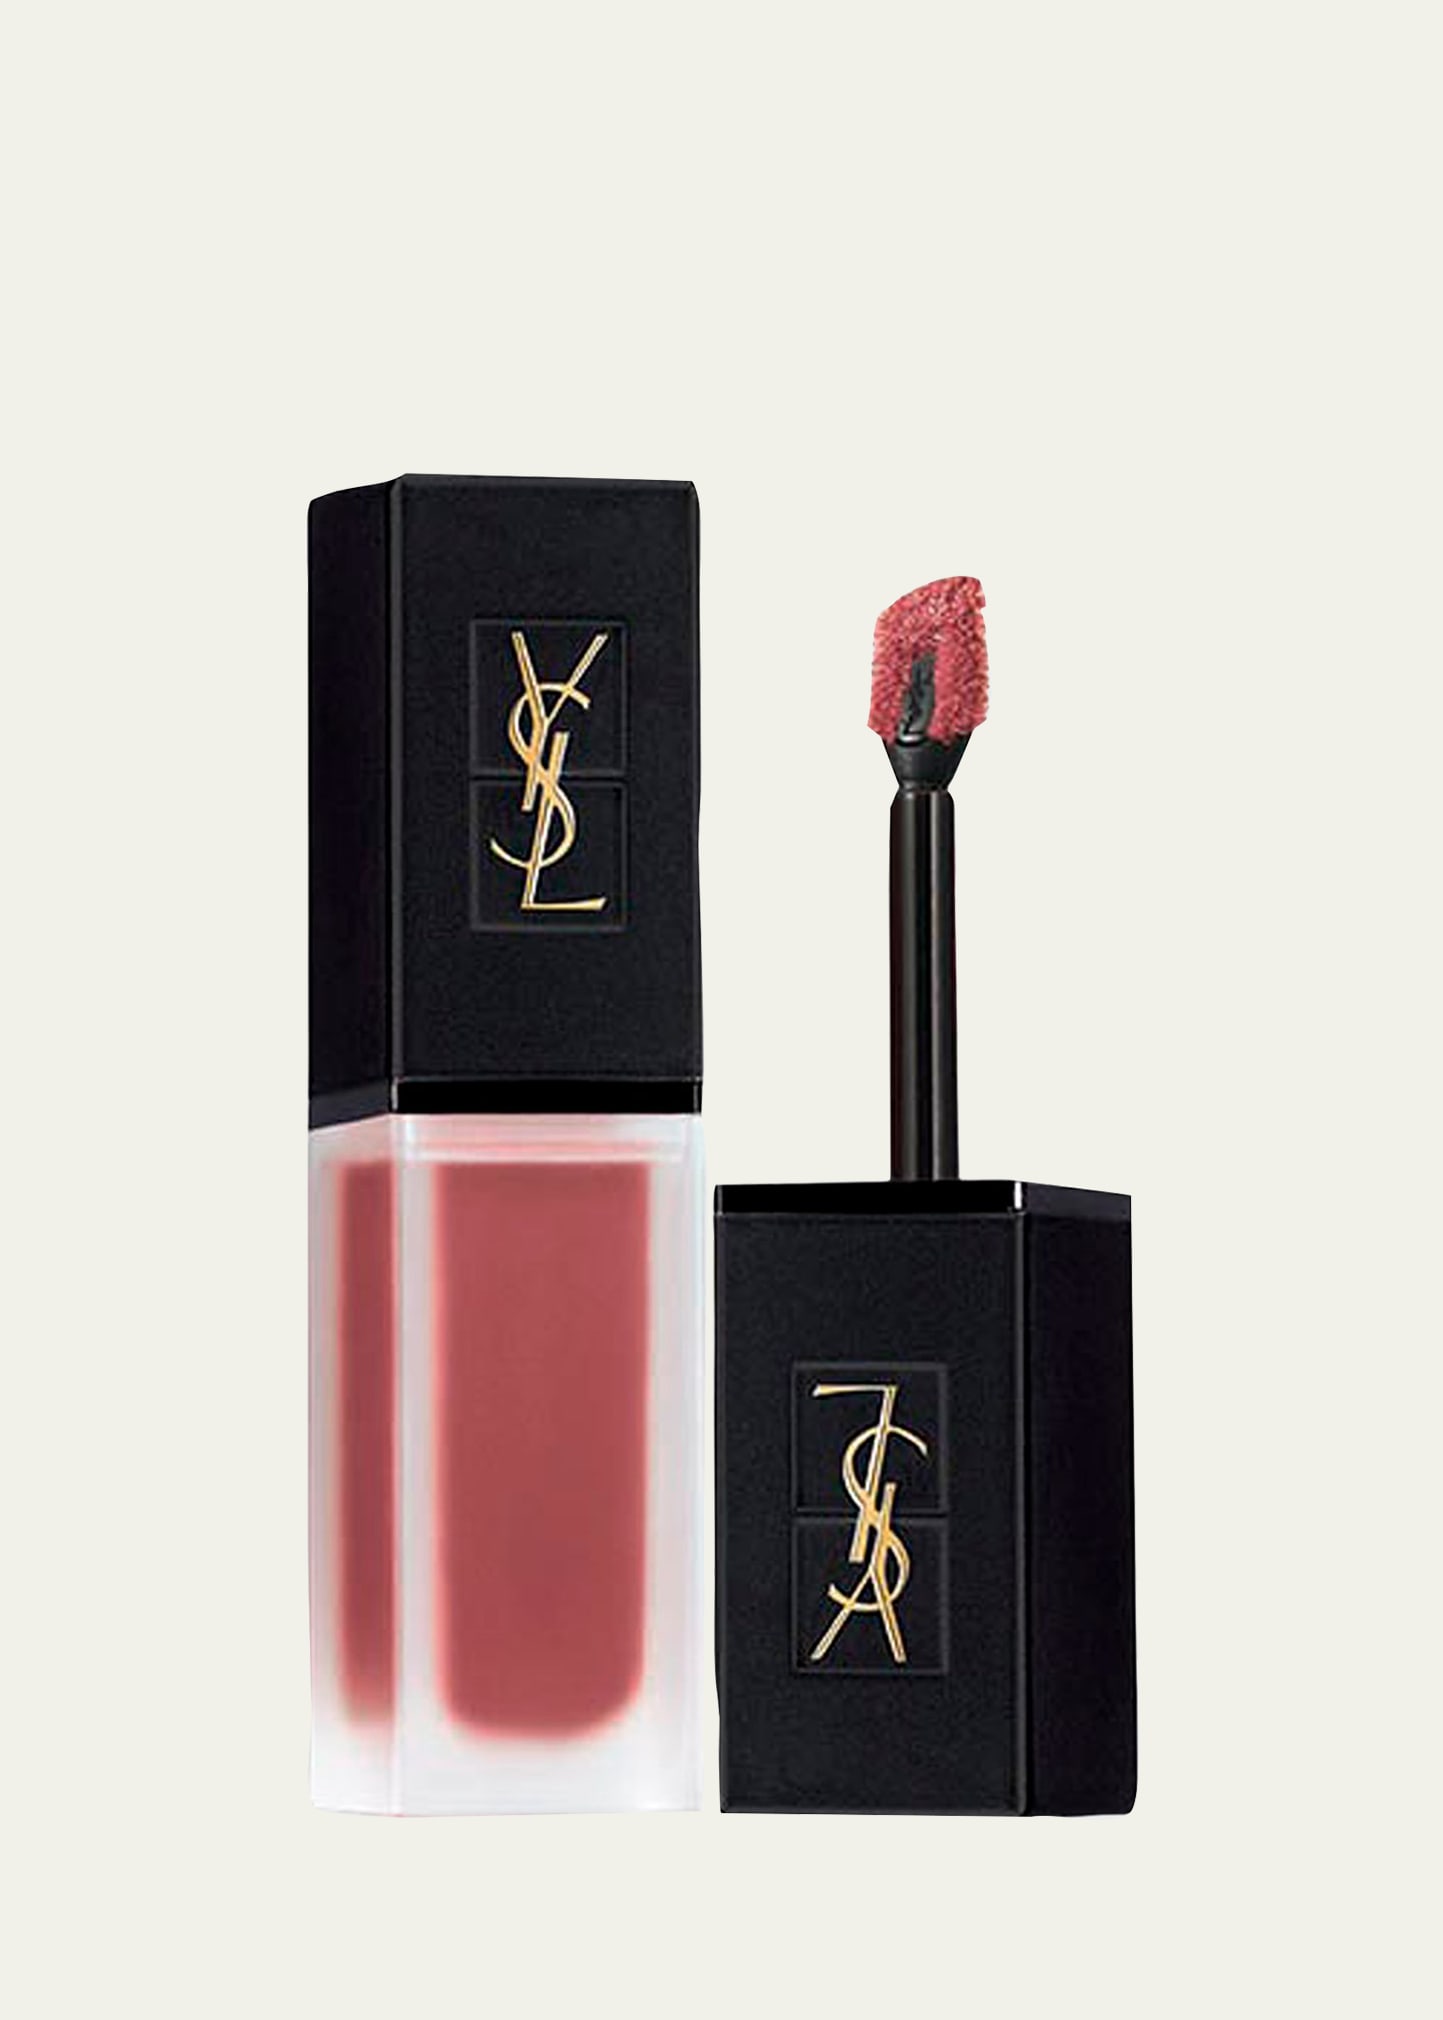 Saint Laurent Tatouage Couture Velvet Cream Liquid Lipstick In 210 Nude Sedition